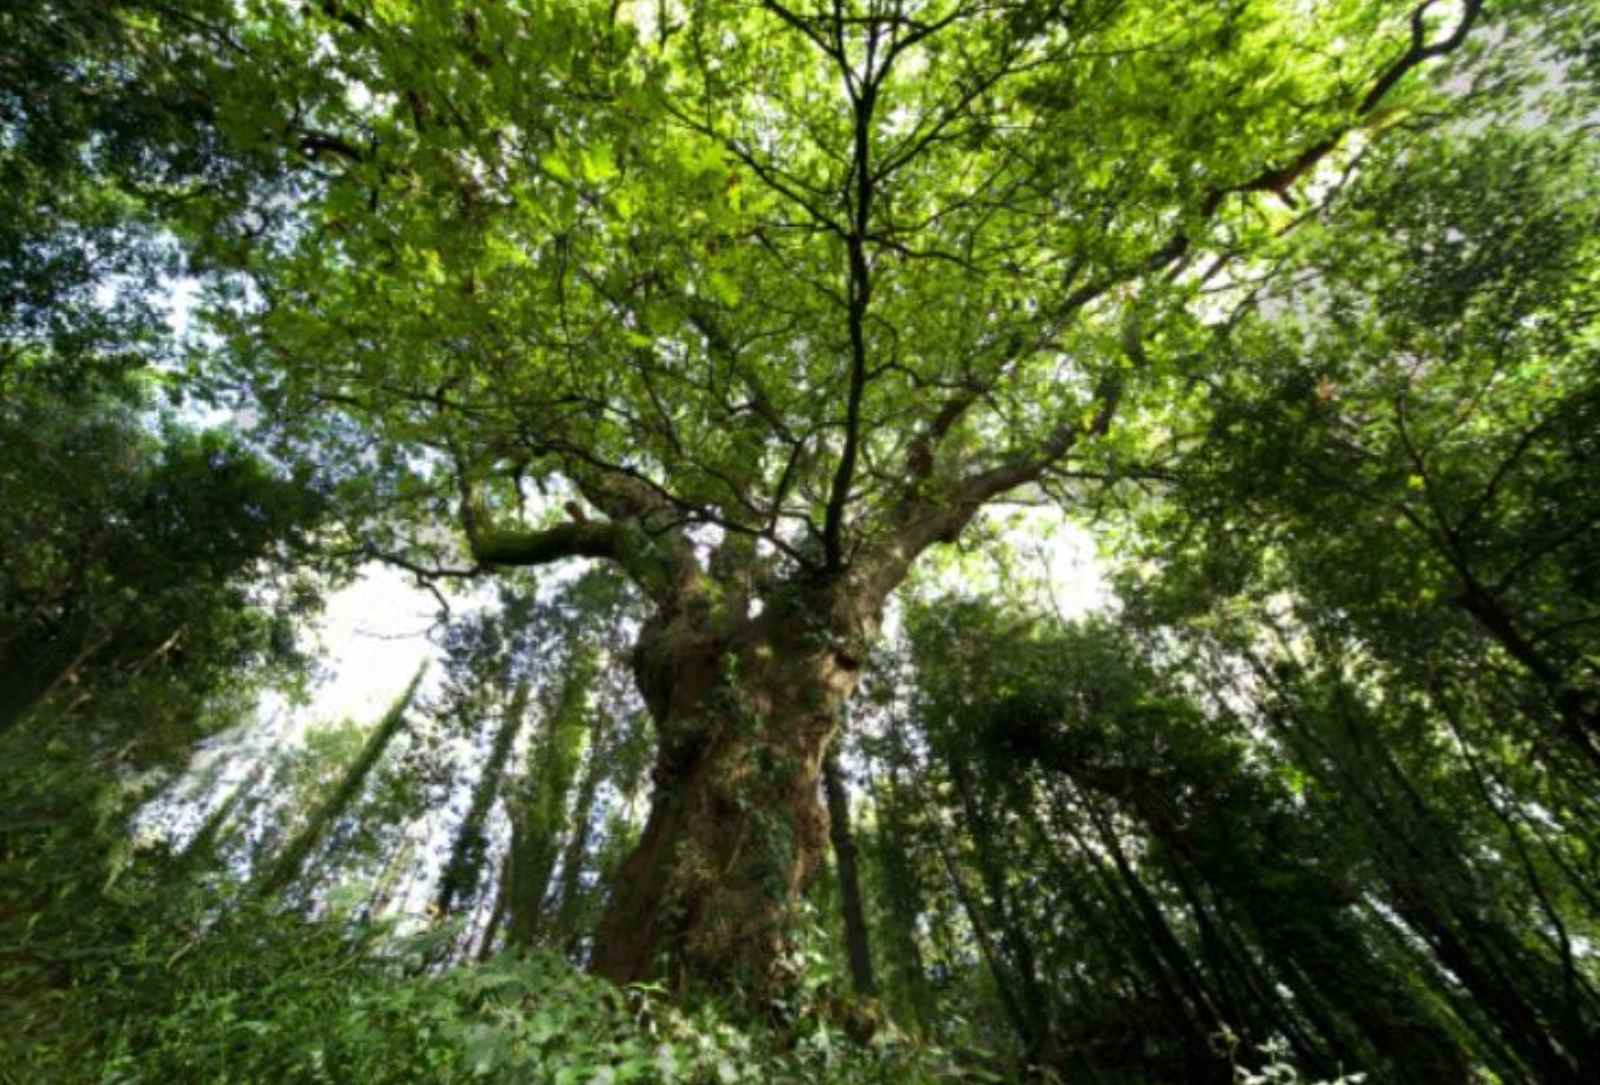 La historia del roble del Bosque del Banquete de Conxo que puede ser mejor árbol europeo 2022